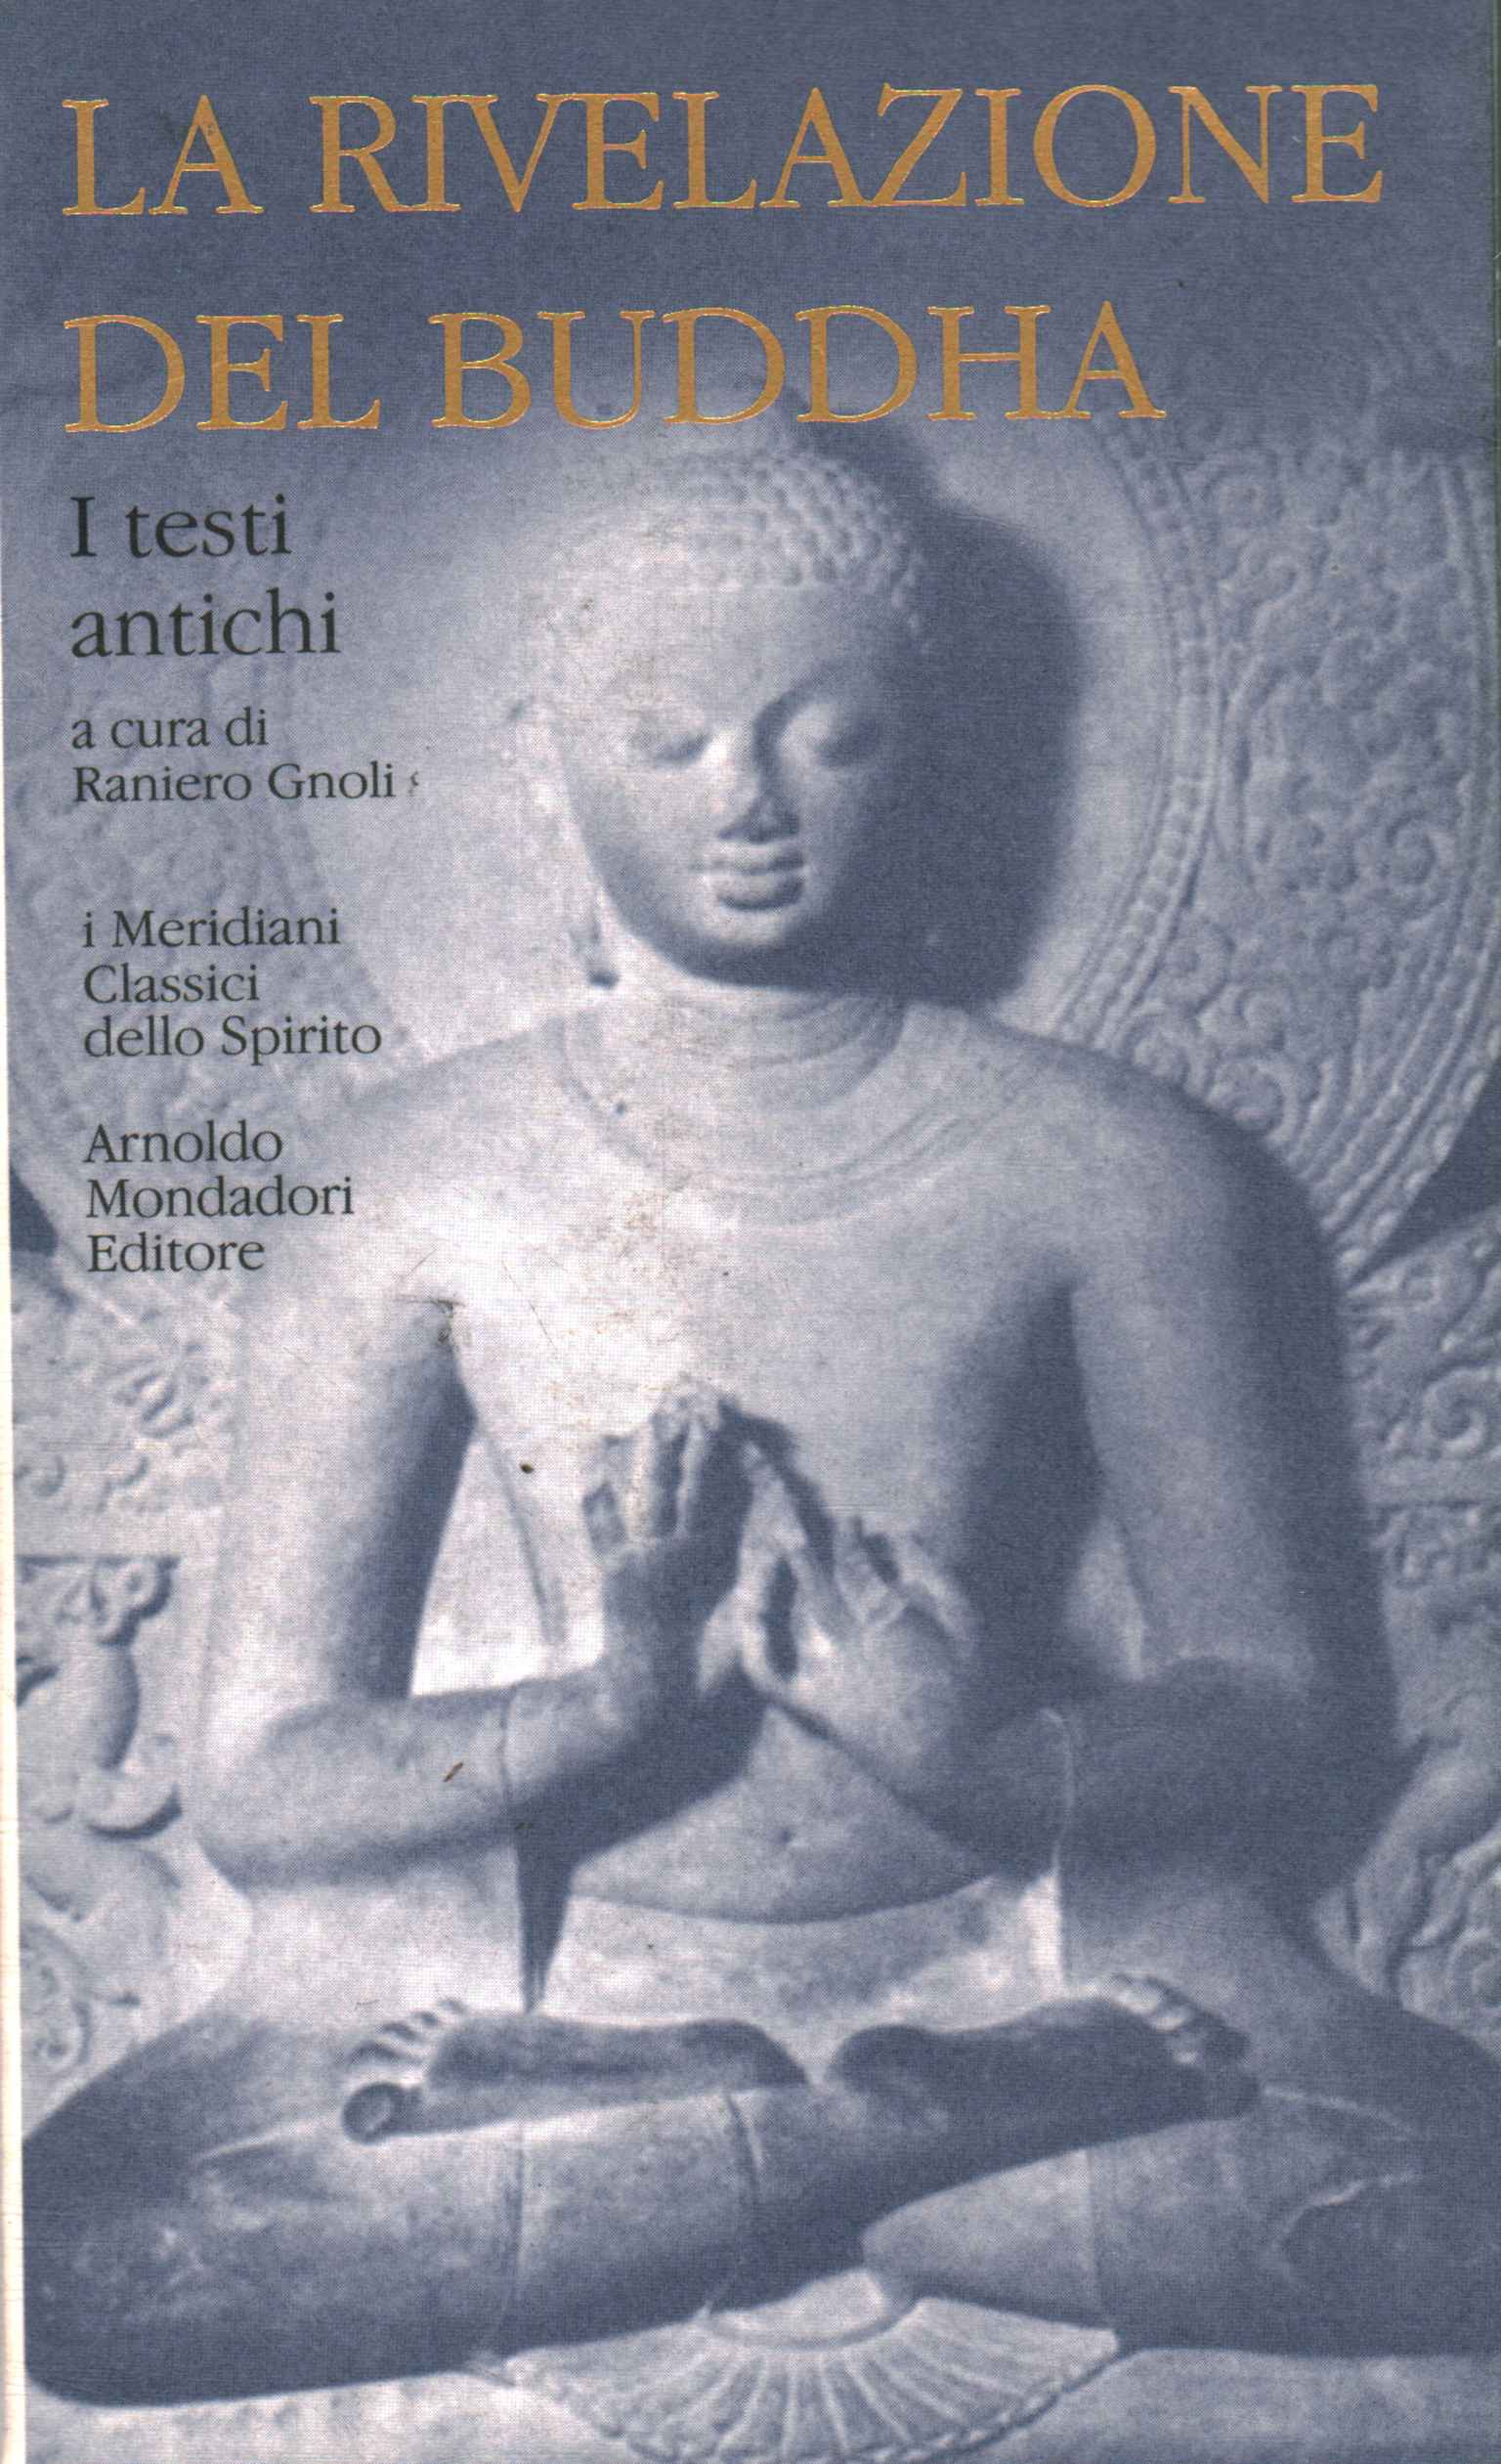 La rivelazione del Buddha ,La rivelazione del Buddha. I testi ant